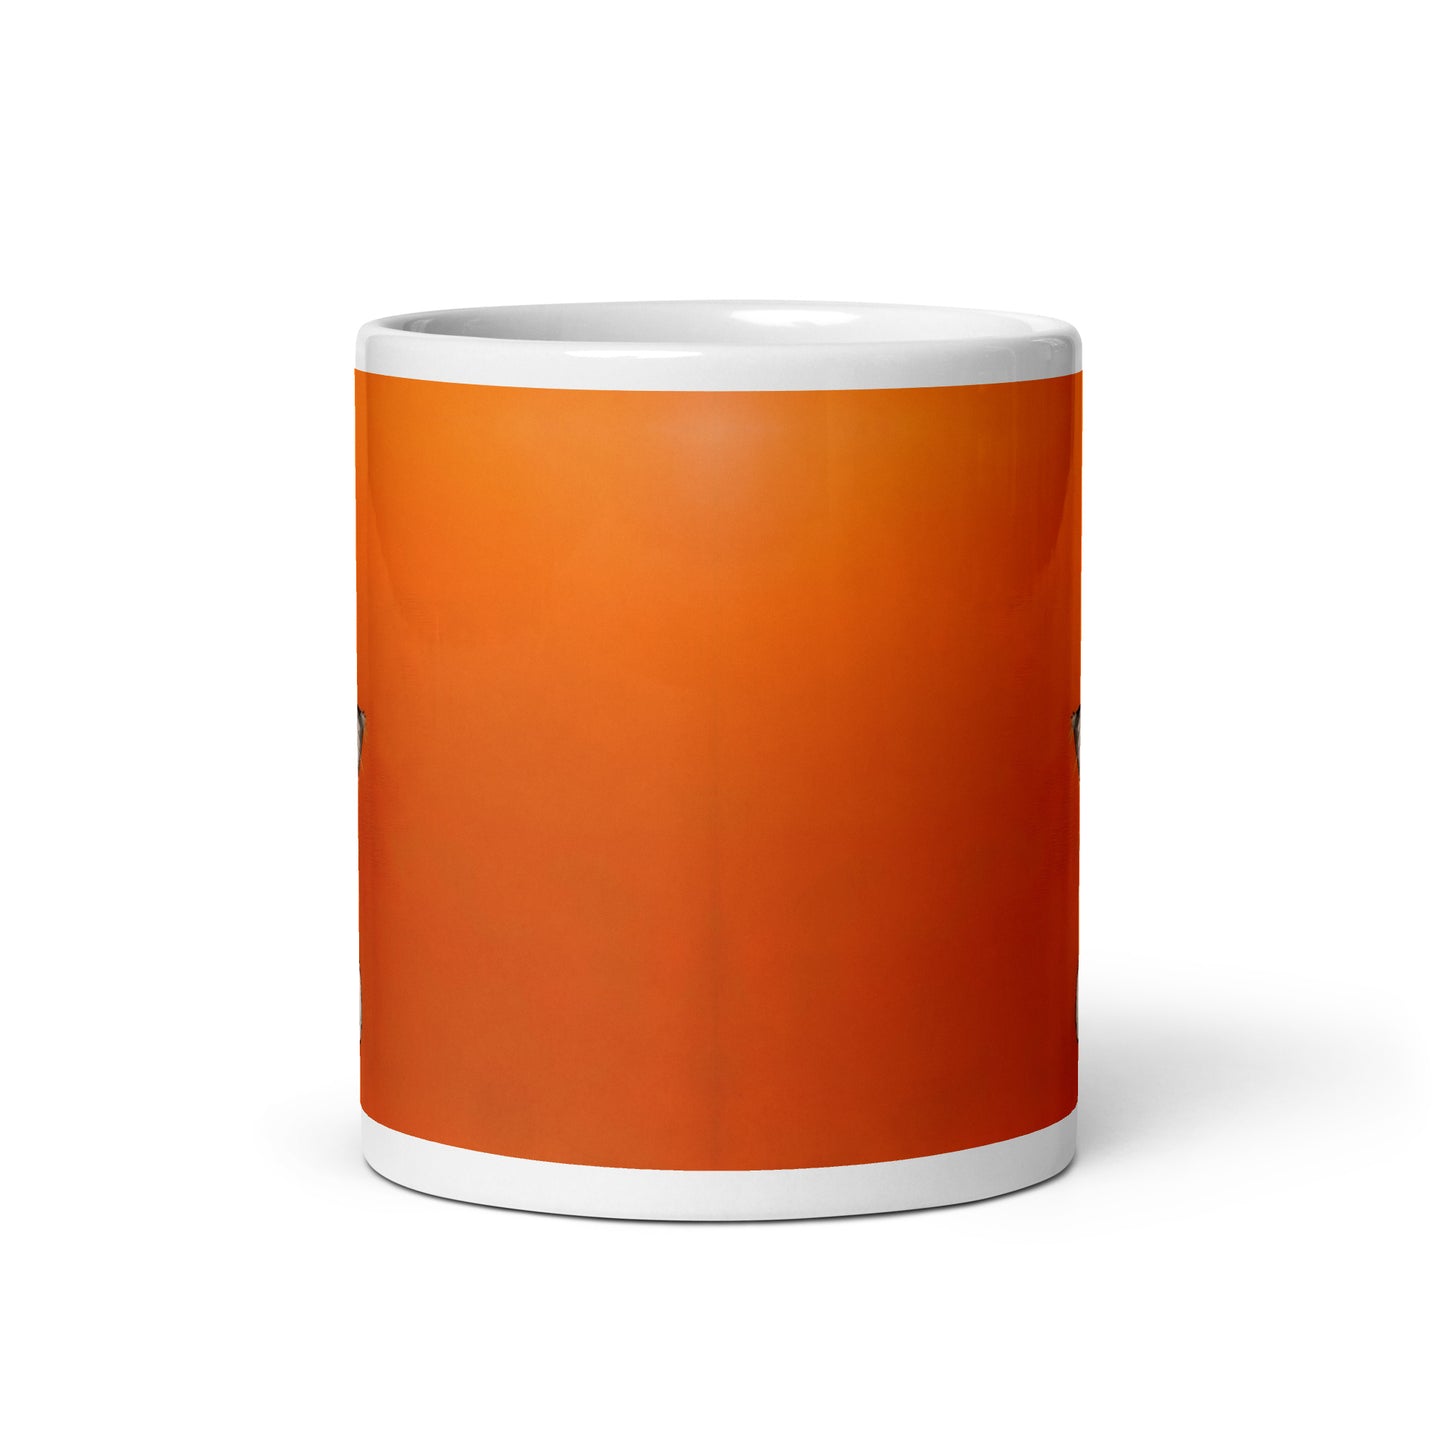 Calico Cat on Orange White glossy mug